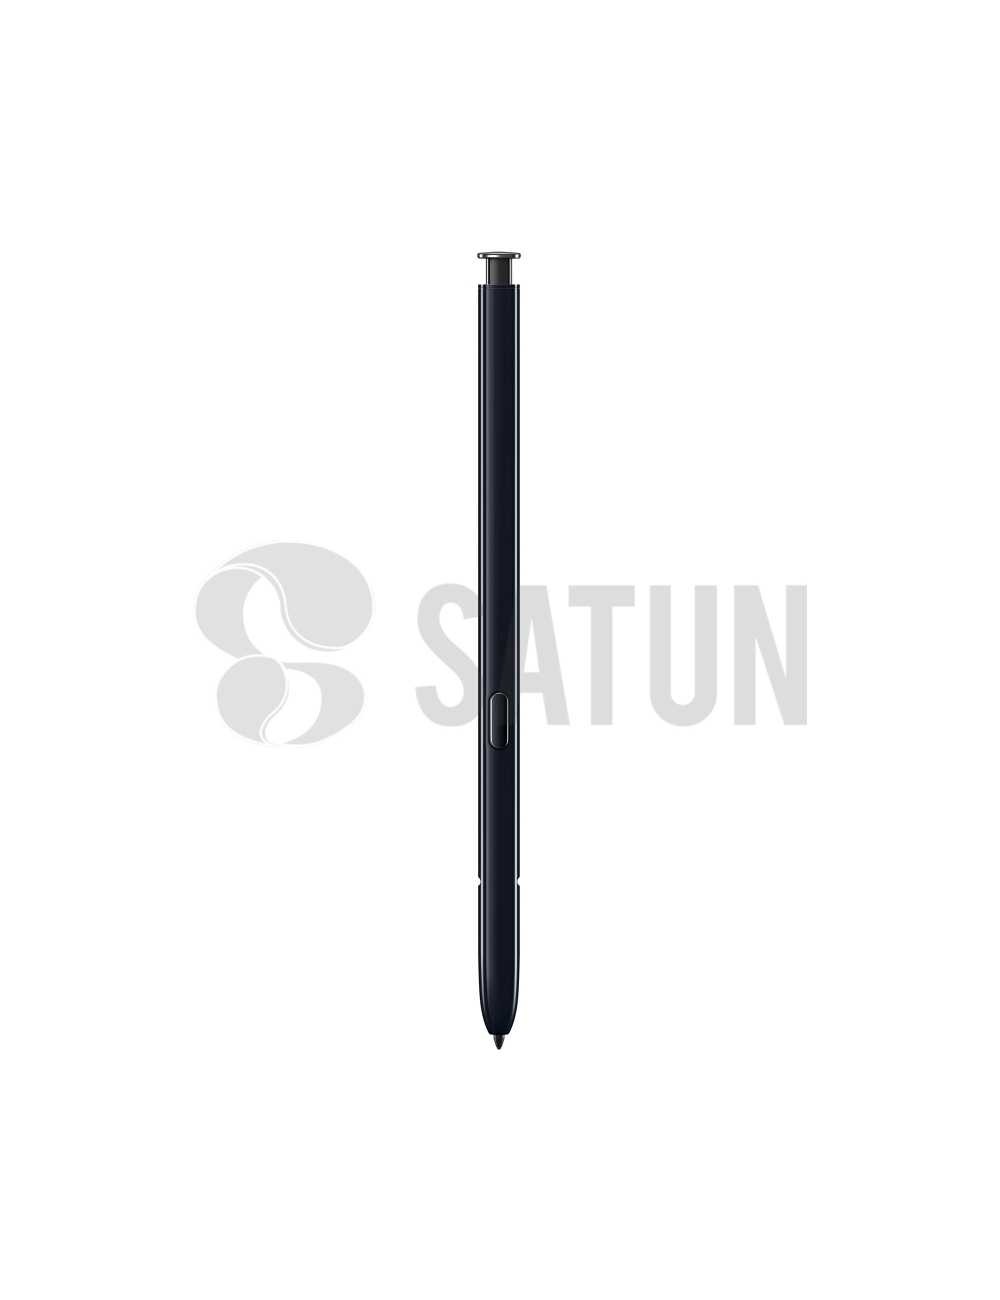 S Pen Samsung Galaxy Note 10 y Note 10 plus negro